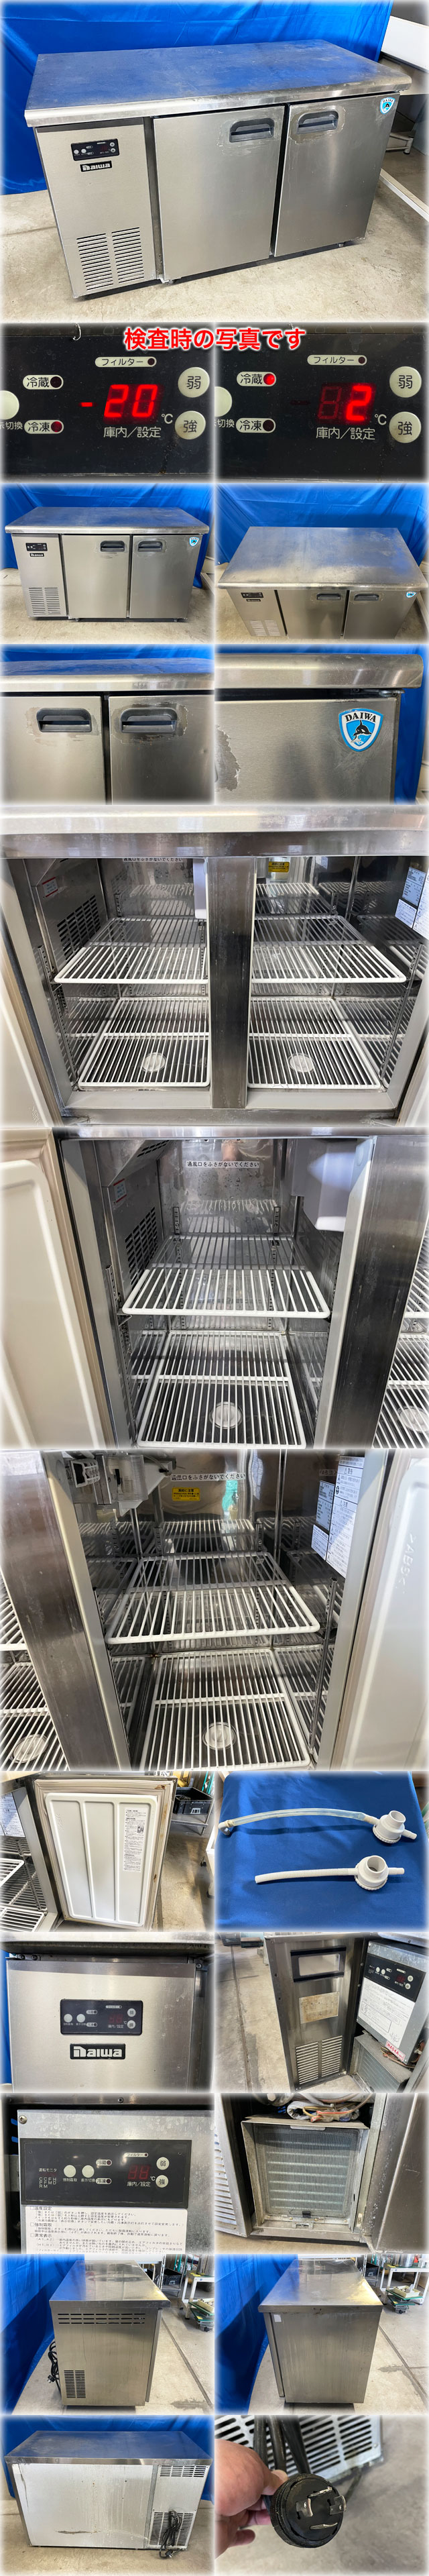 安い日本製ダイワ冷機 冷凍冷蔵コールドテーブル 4663S 1200x600x800mm 冷凍109L:冷蔵113L 三相200V ヨコ型 台下冷凍冷蔵庫 冷凍冷蔵庫